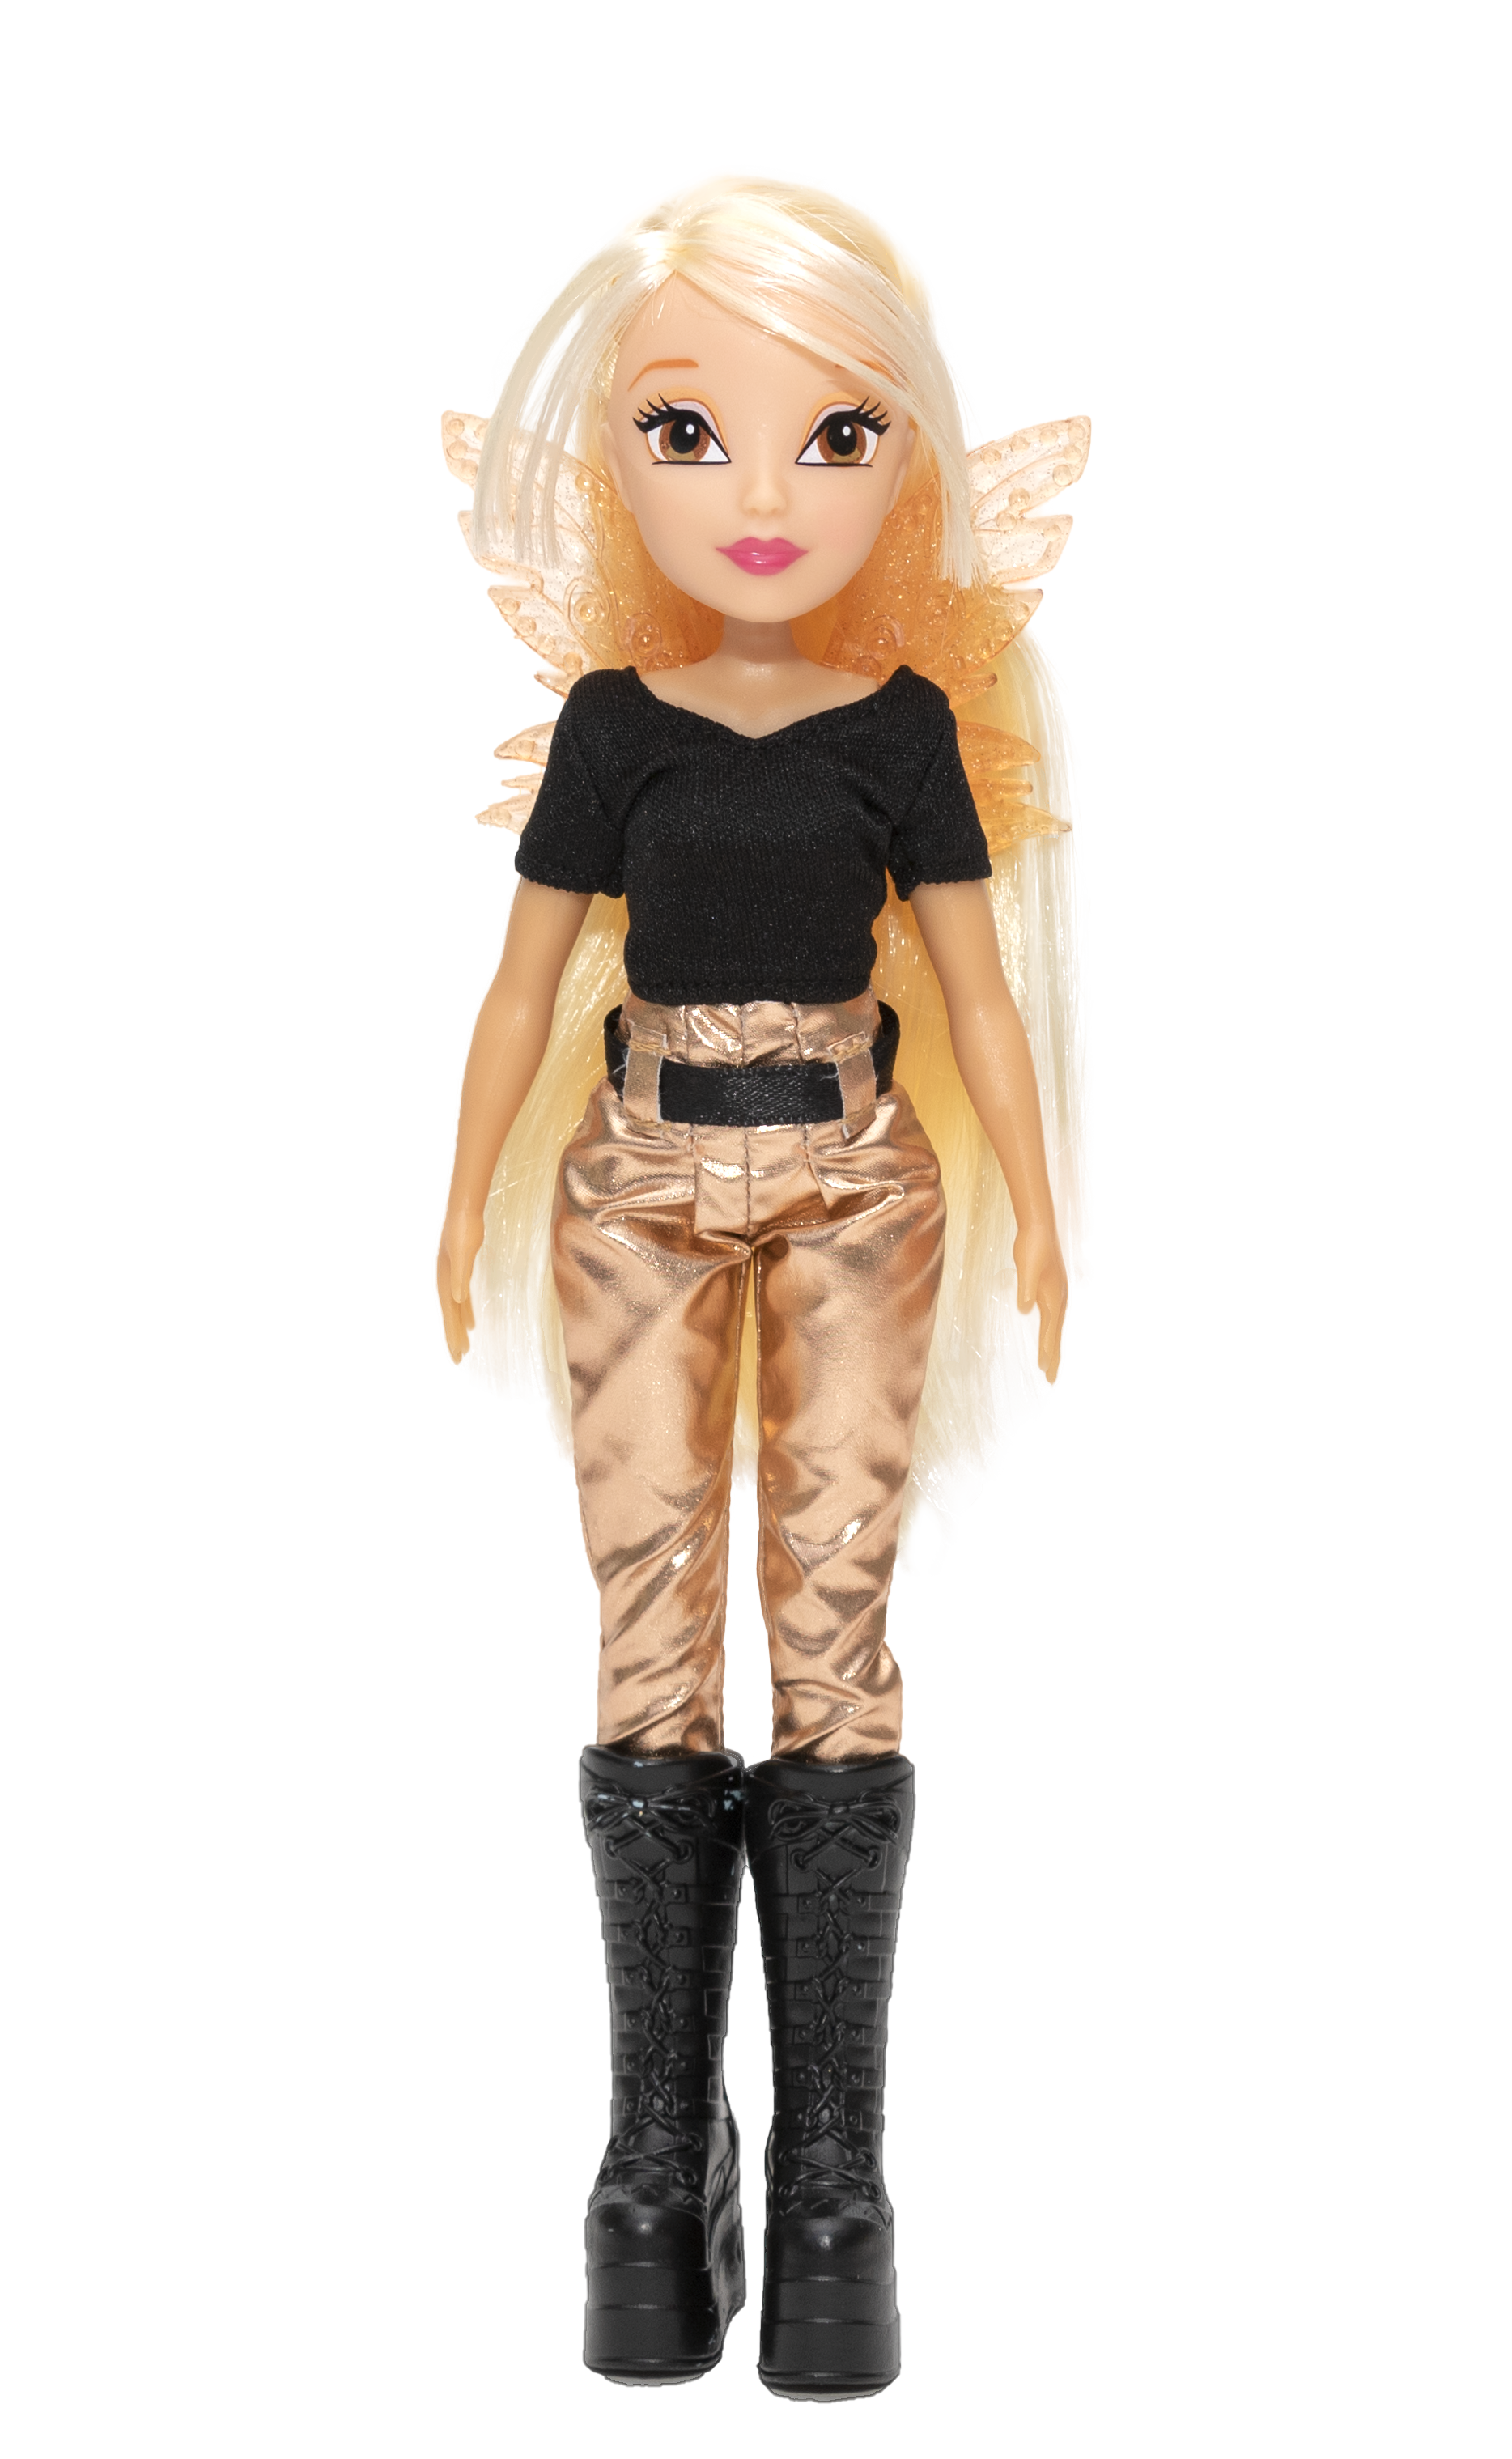 Winx doll - bambola fashion doll personaggio stella alta cm 23 - WINX